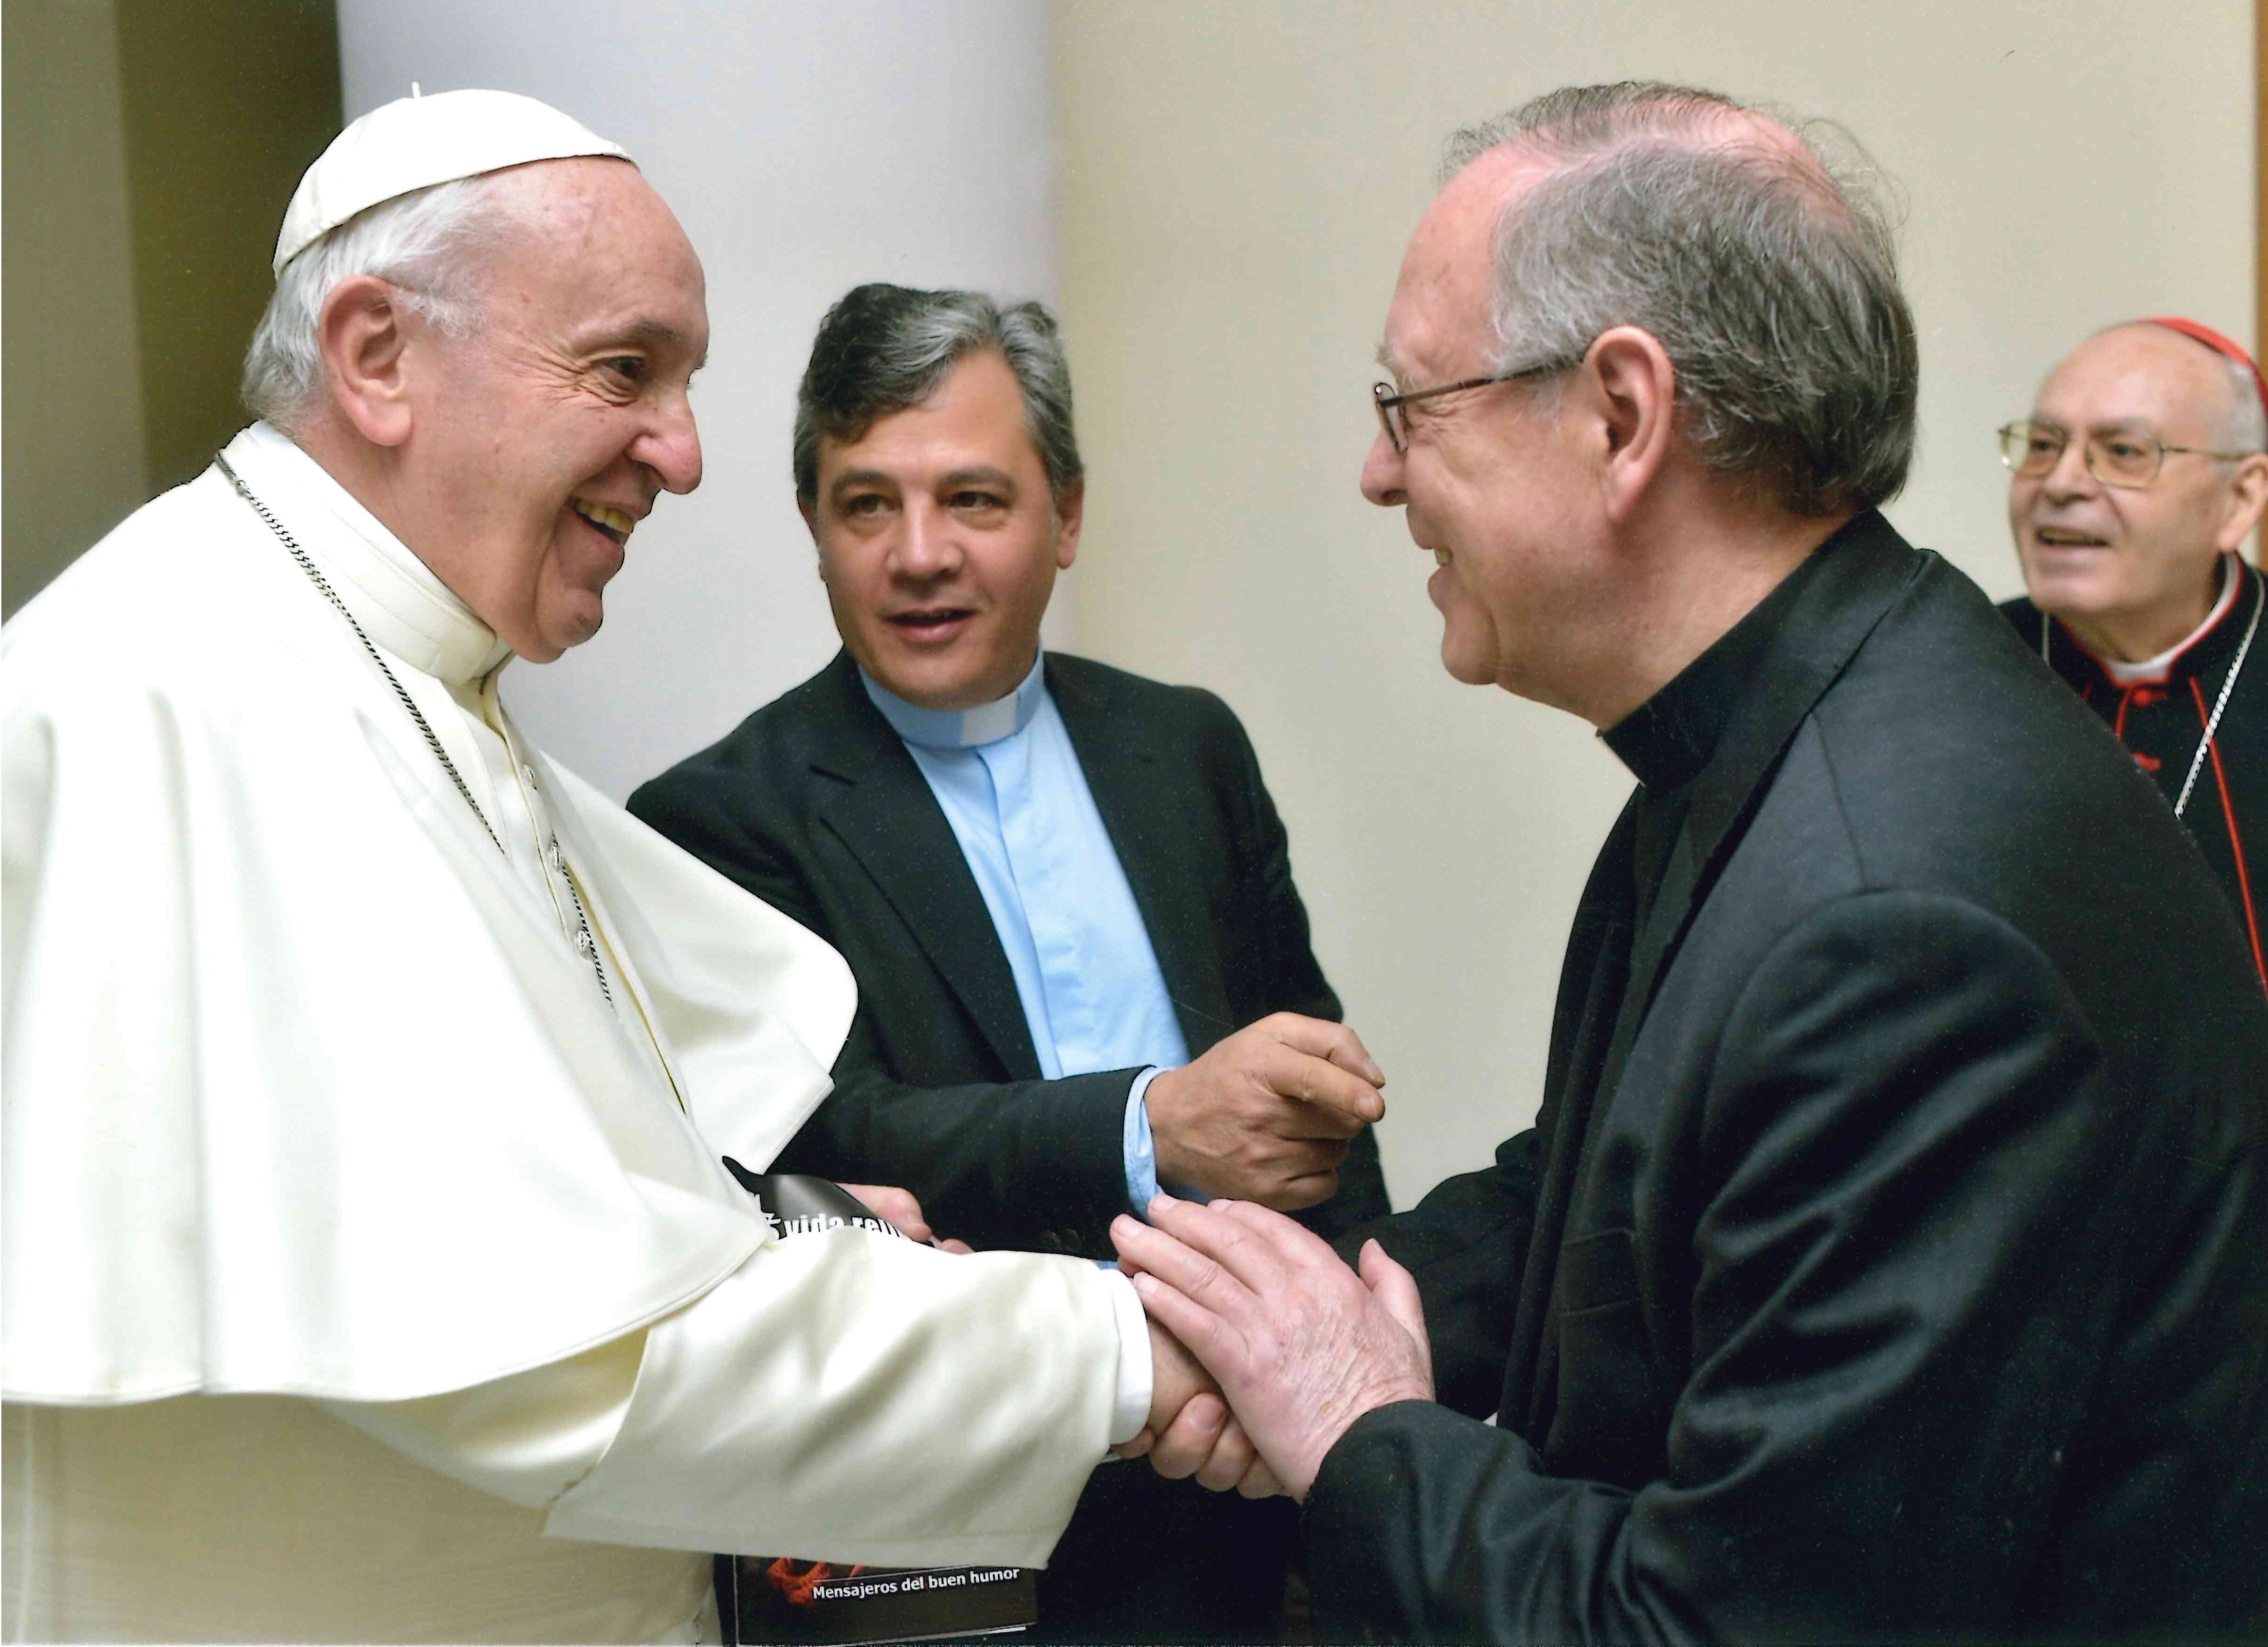 Os diretores e colaboradores da Revista VIDA RELIGIOSA com o Papa Francisco